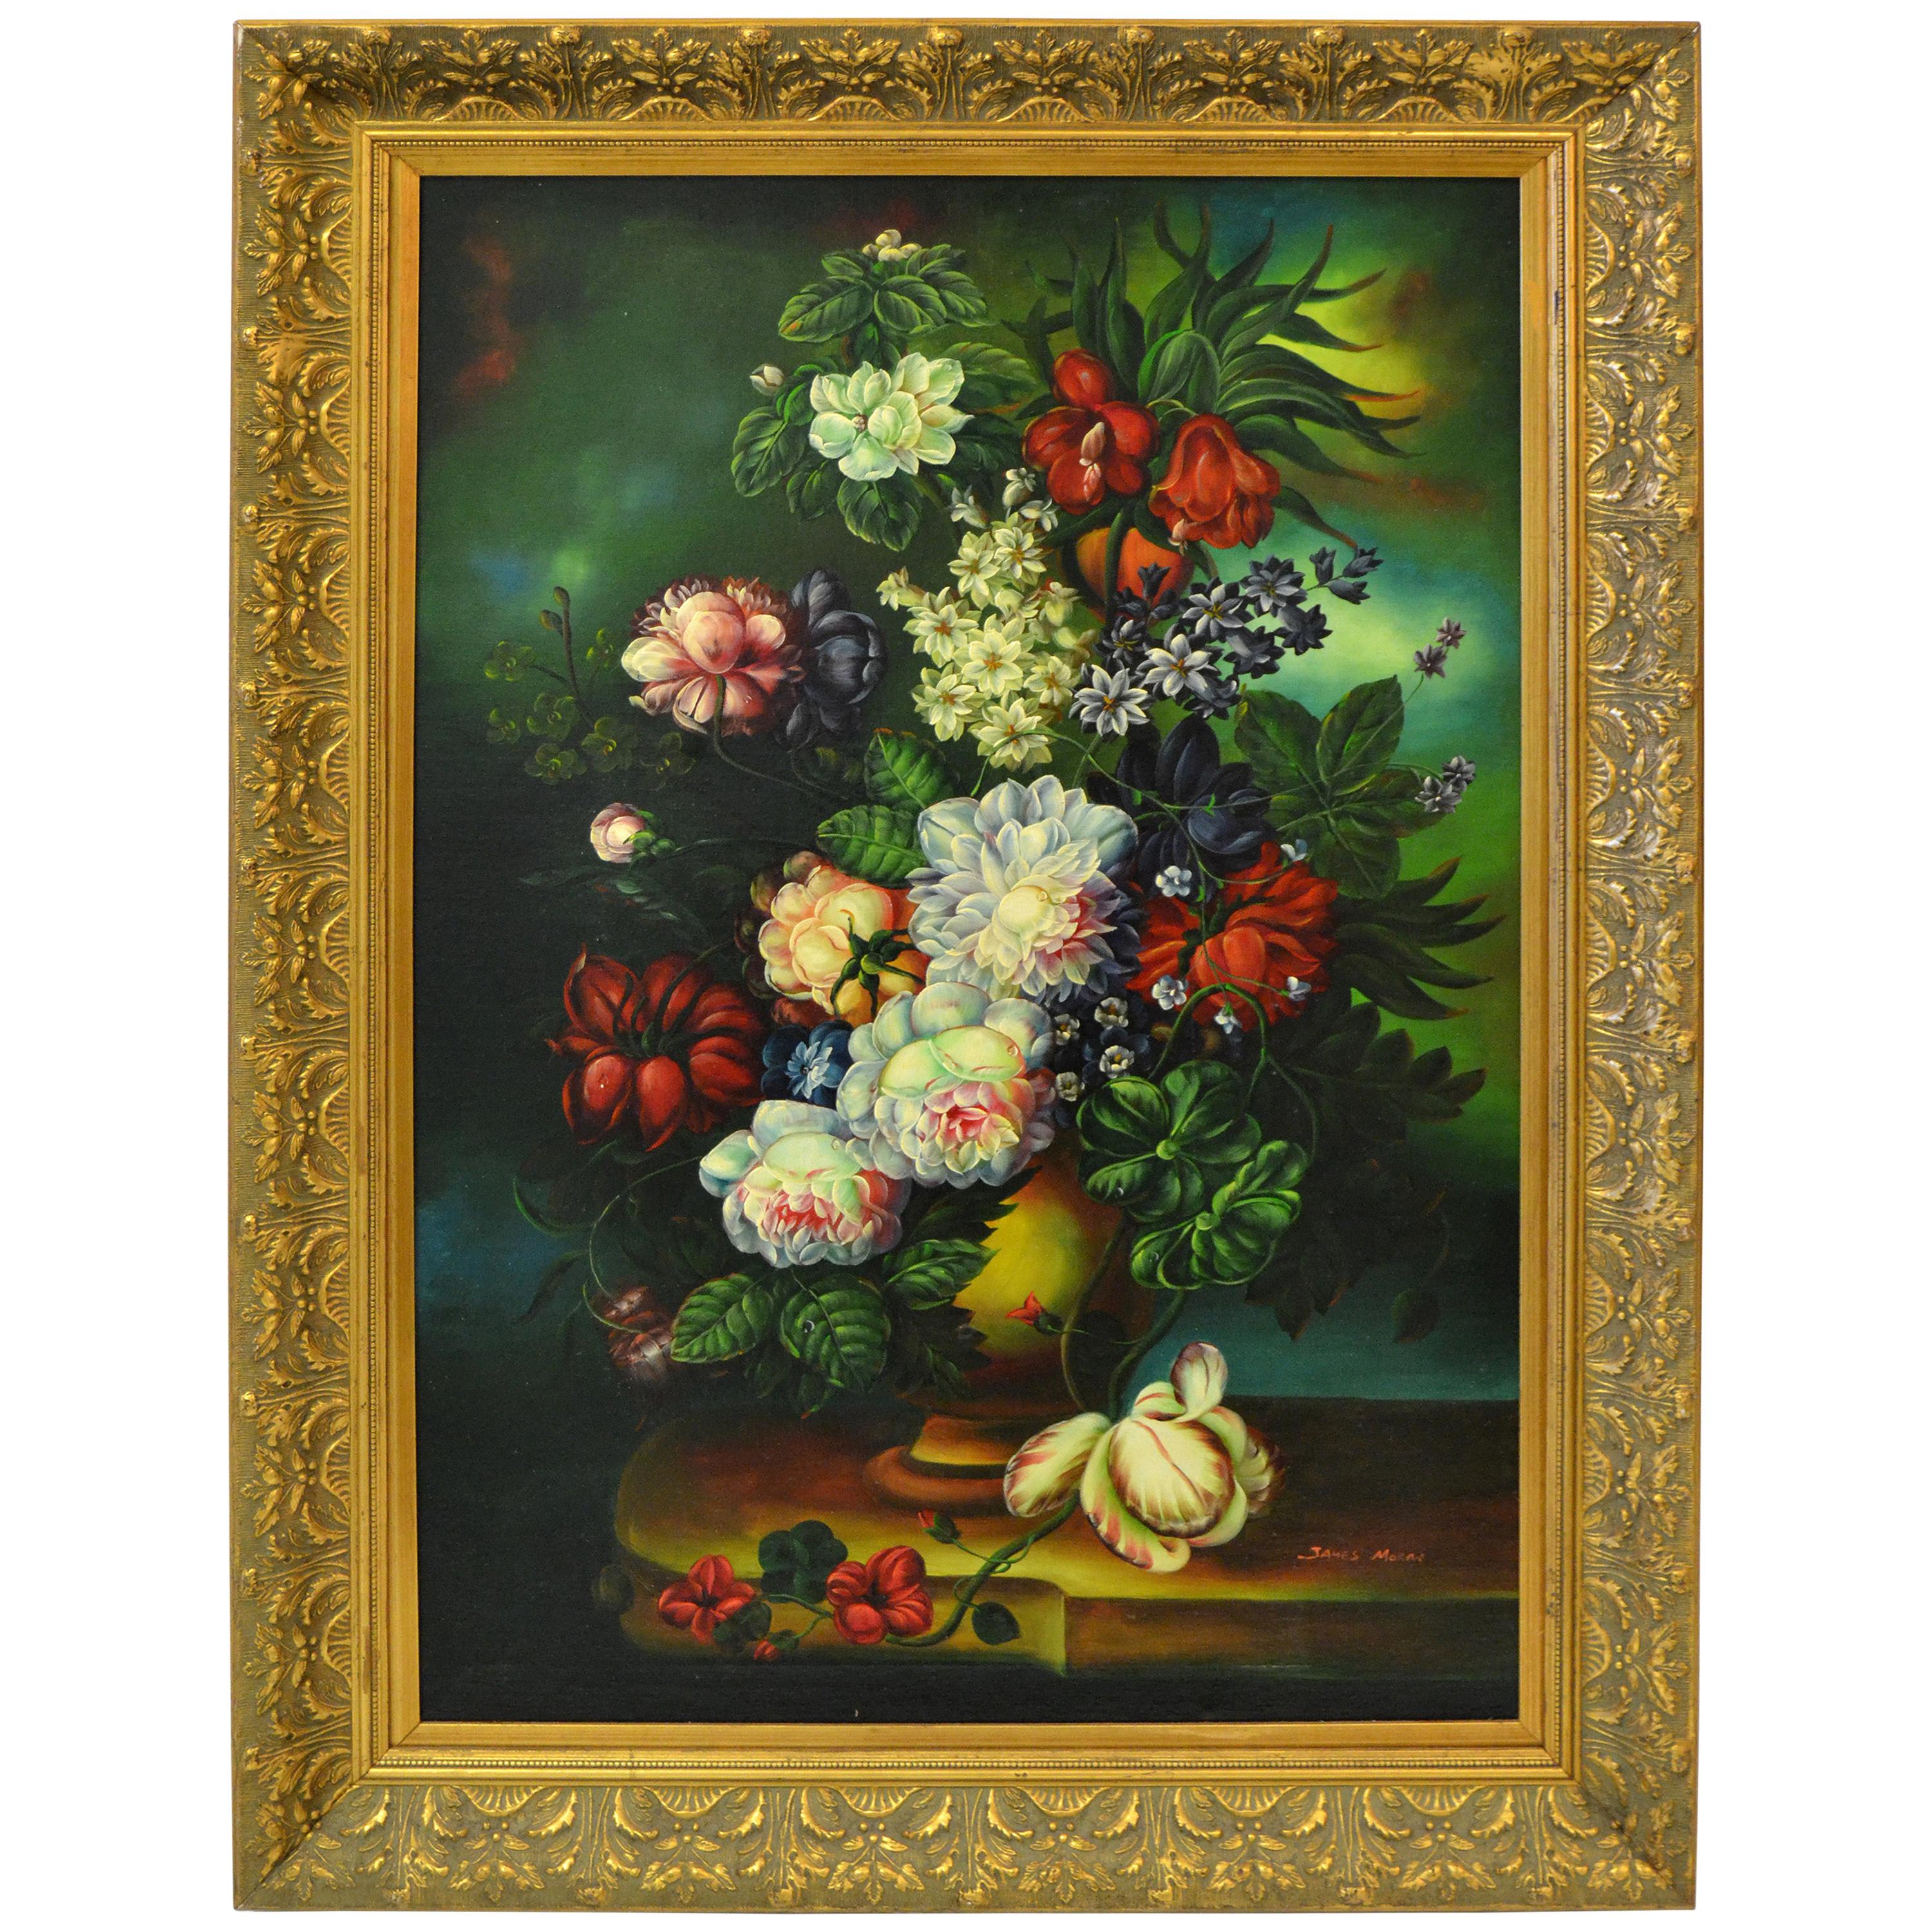 Ornate Gilt Framed Oil Painting Floral Bouquet Still Life Signed James Moran For Sale